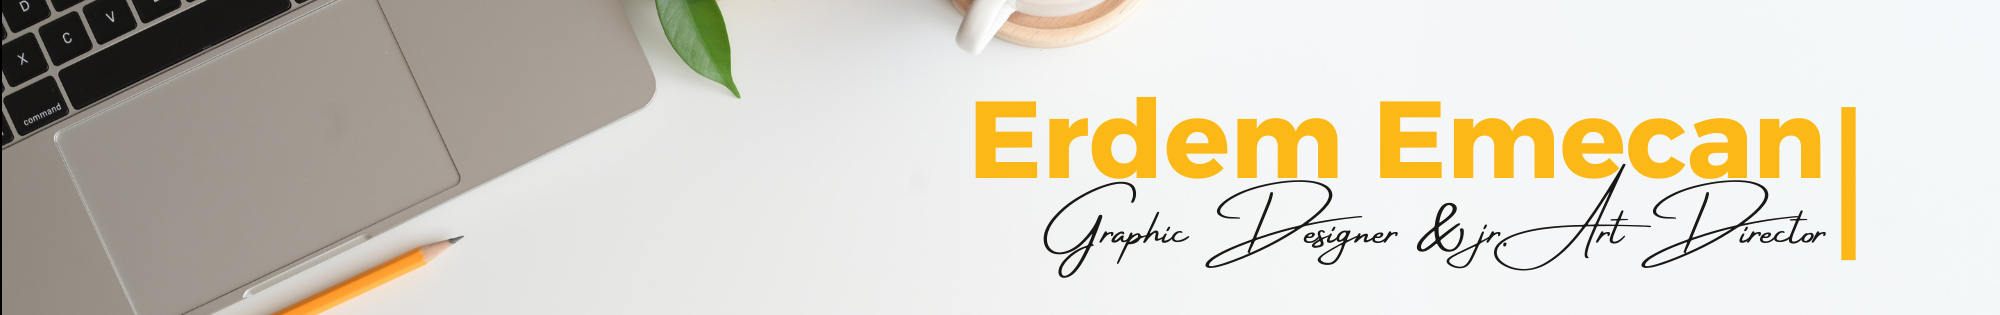 Banner de perfil de Erdem Emecan